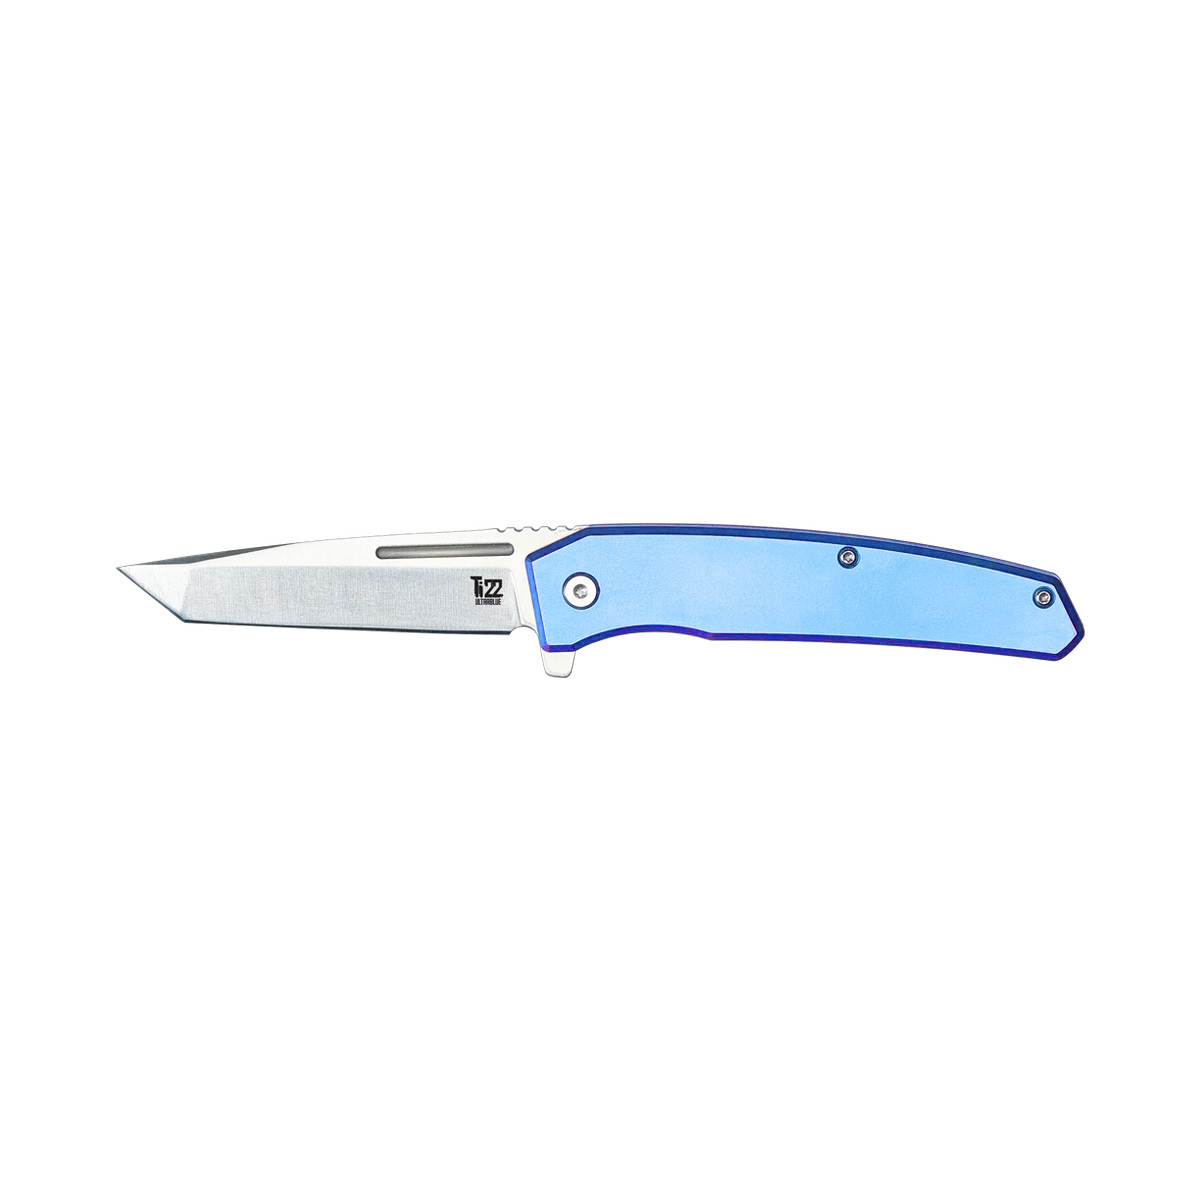 Складной нож Ontario Ti22 Ultrablue, сталь AUS8, рукоять титан